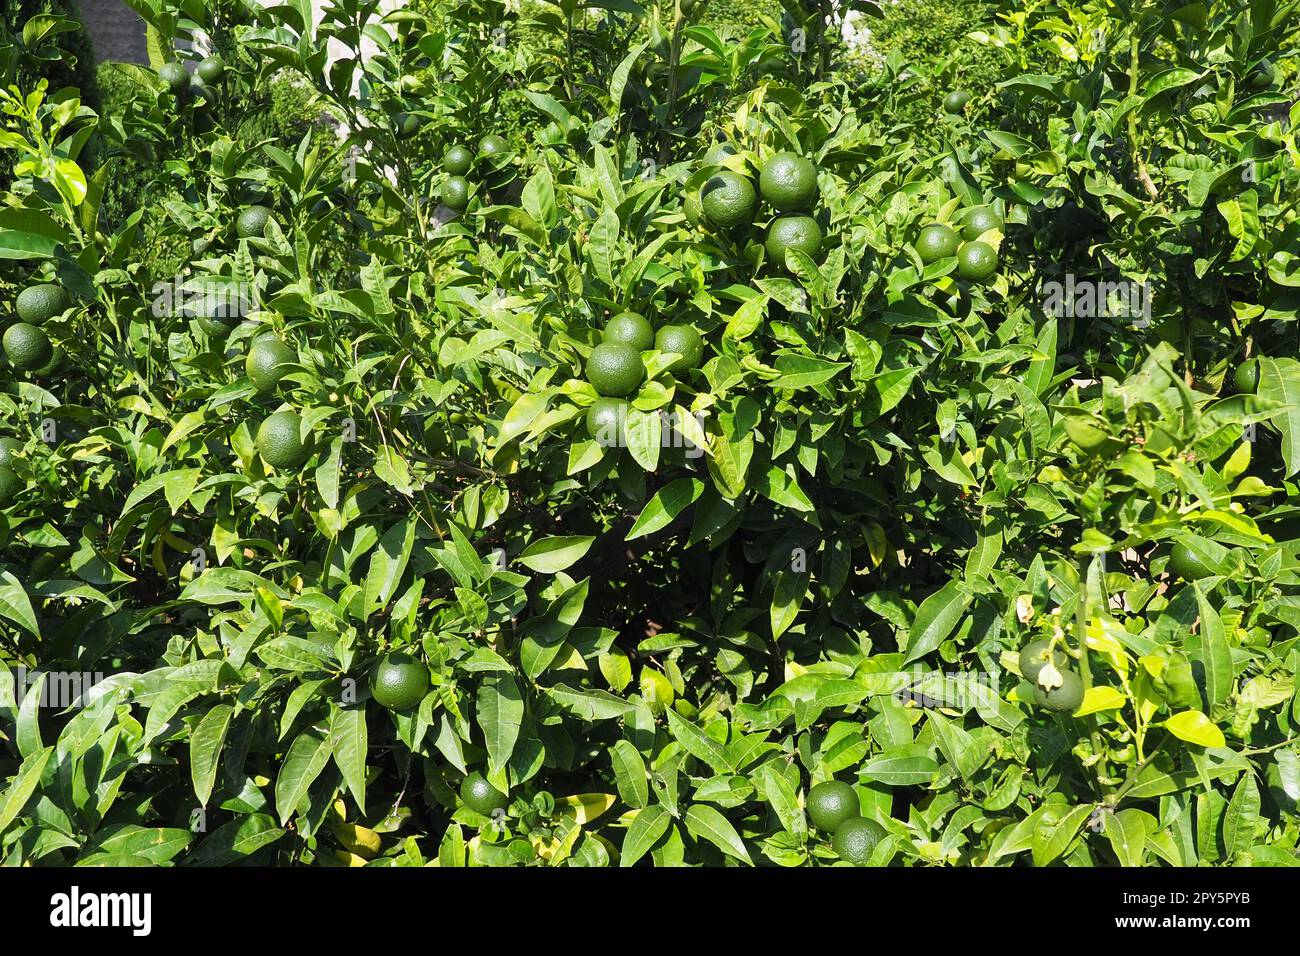 Orangenbaum mit grünen Orangen. Orange Citrus sinensis ist ein Obstbaum, eine Art der Gattung Citrus der Familie Rutaceae, eine essbare unreife Frucht. Gartenbau und Landwirtschaft. Grüne orangefarbene Blätter. Stockfoto